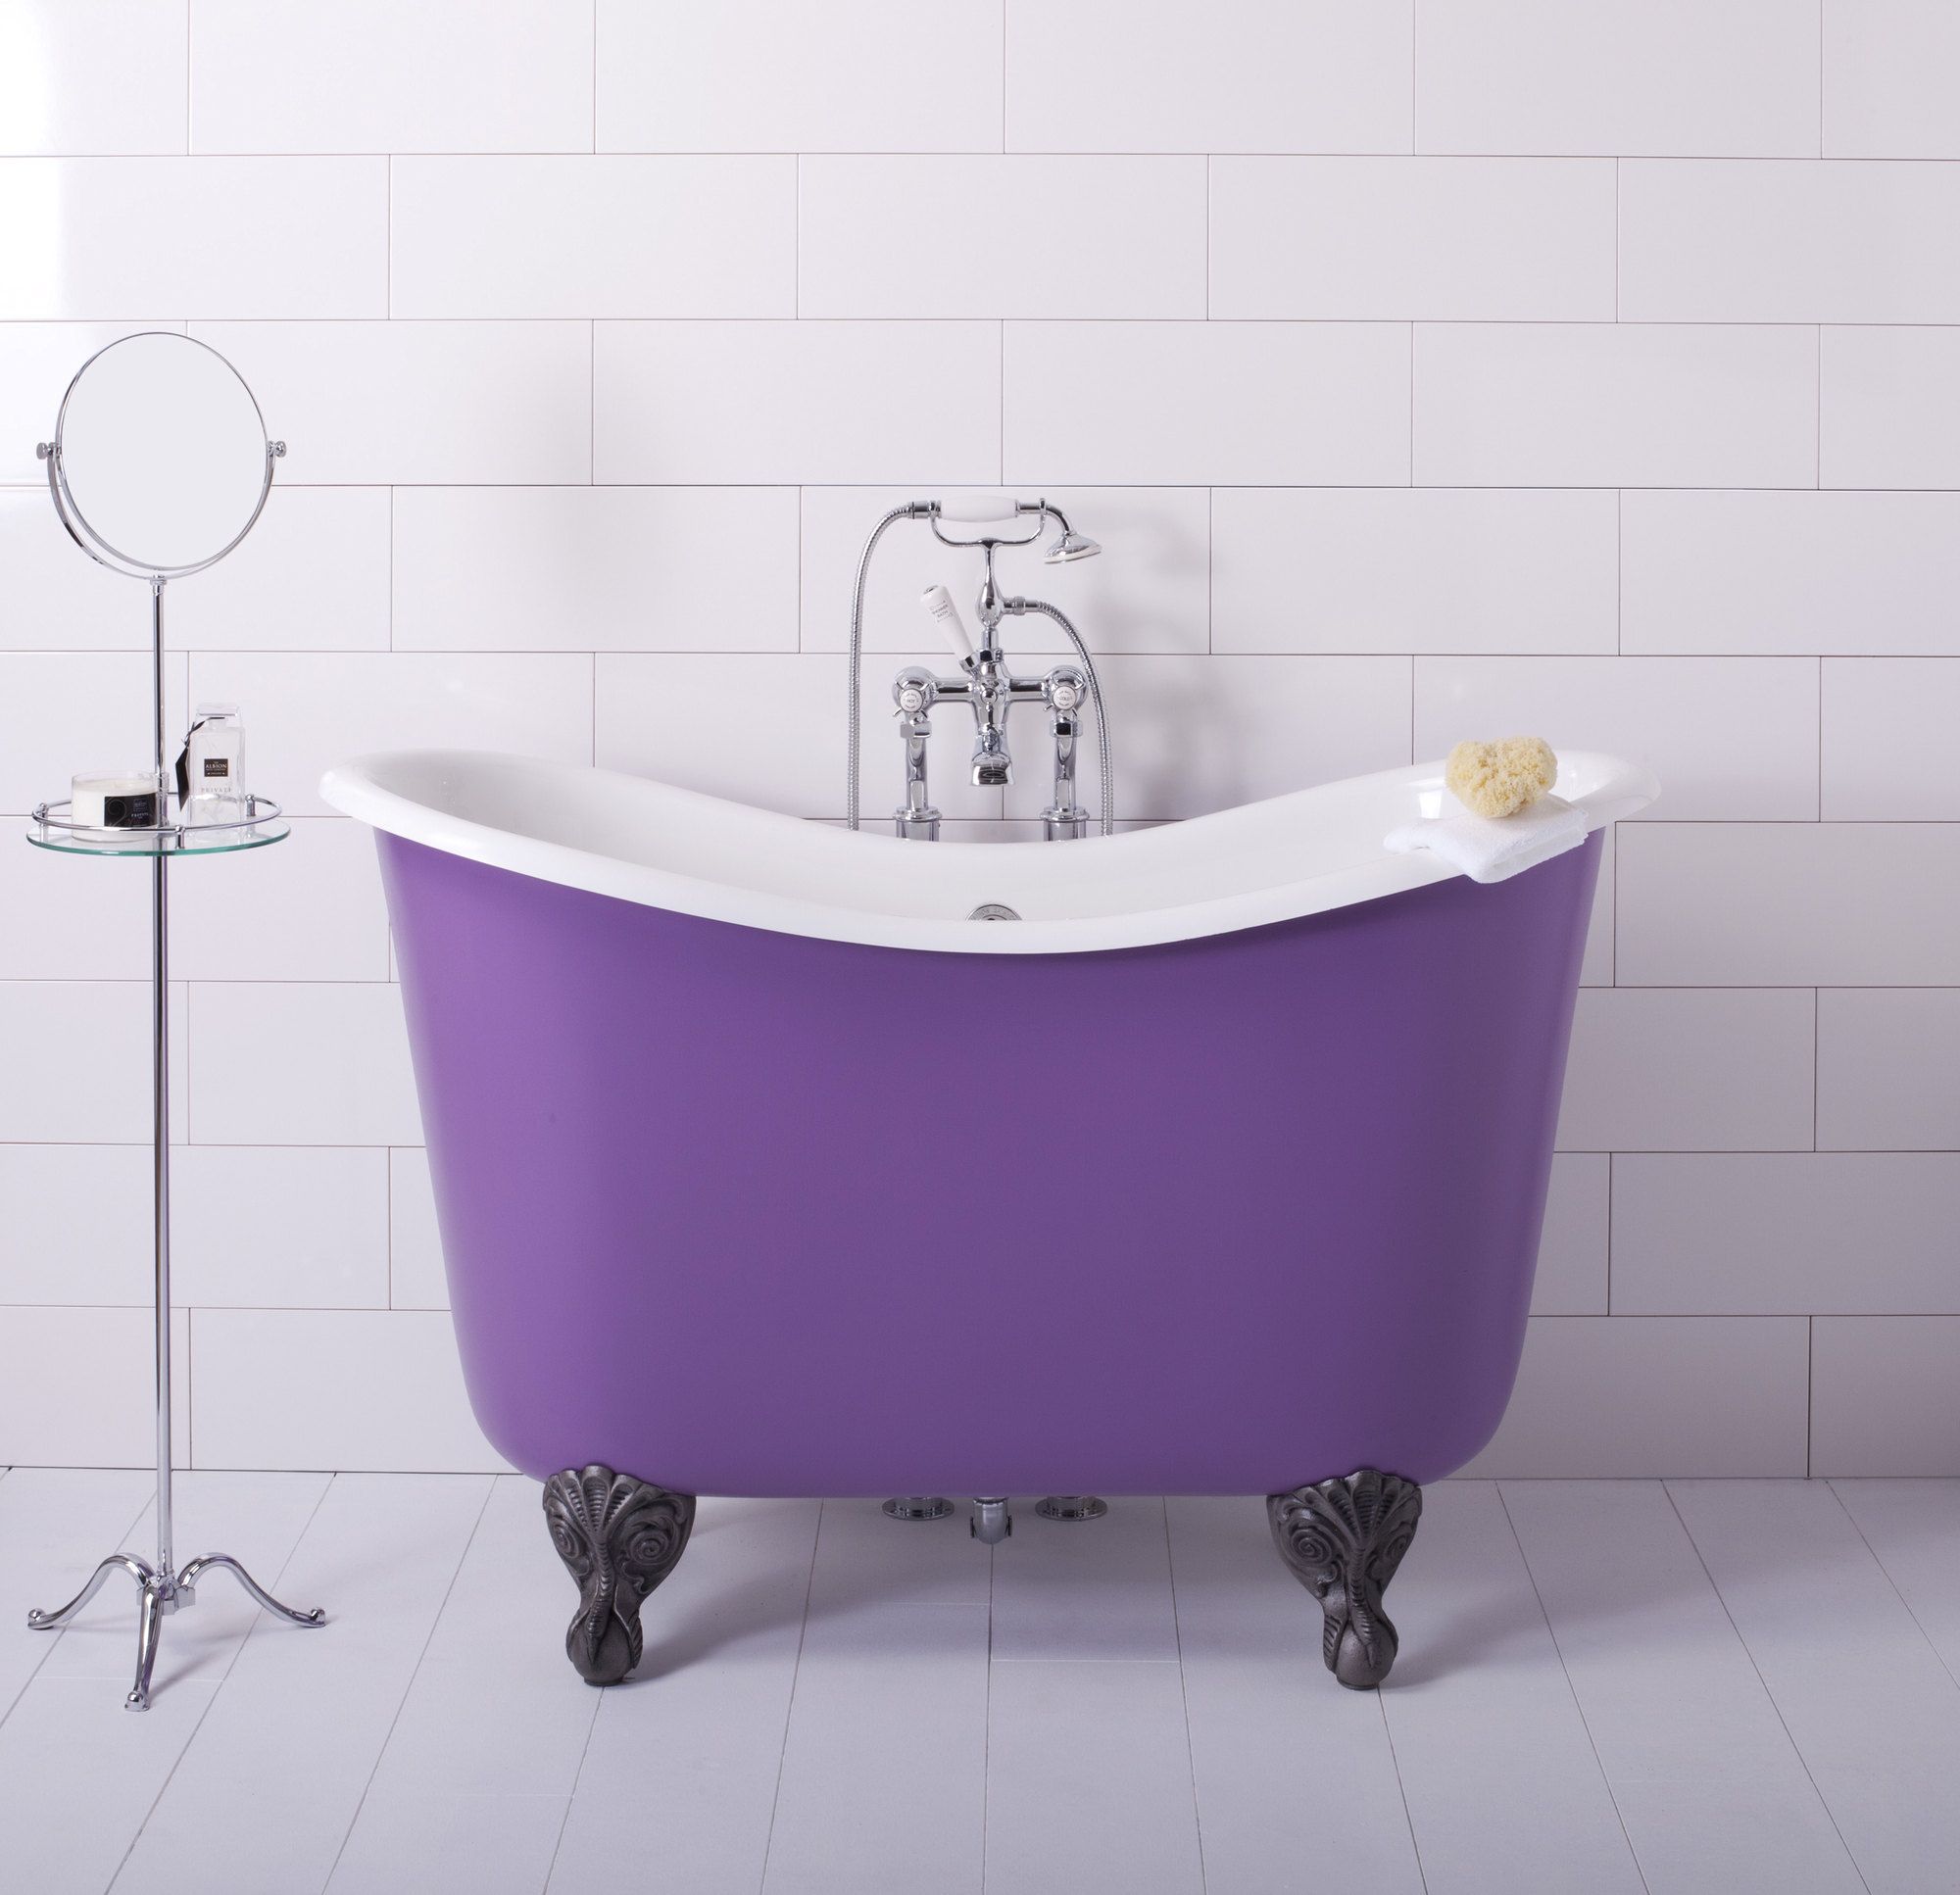 TUBBY TOO Traditional Bathrooms узкая и высокая ванная в классическом стиле на лапах (ALB.21.CP)